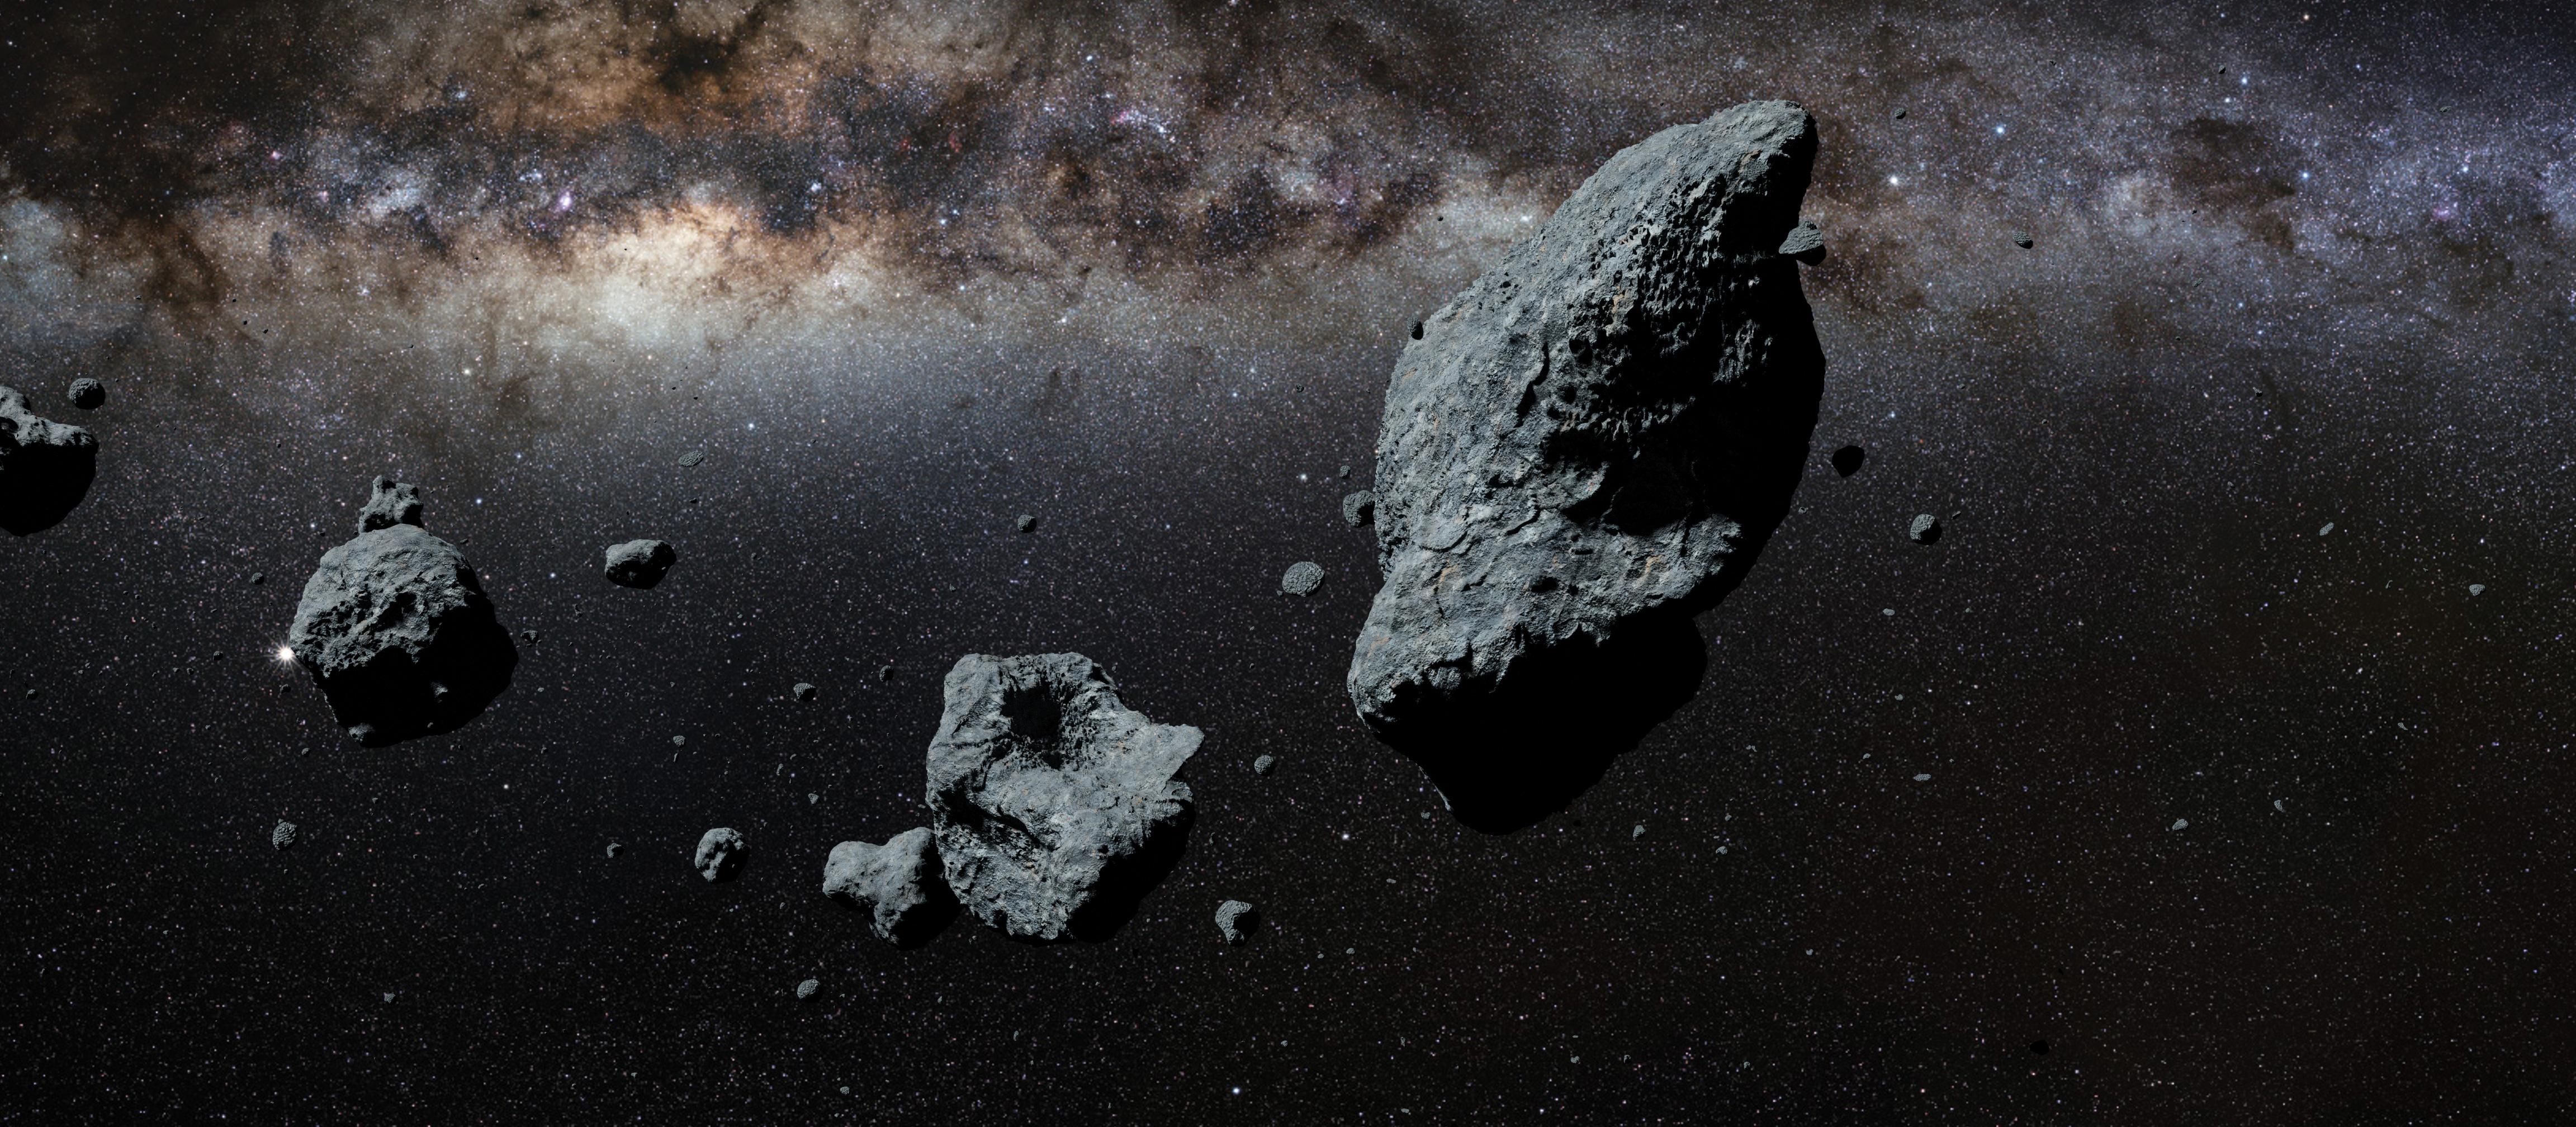 Meteorite, asteroids